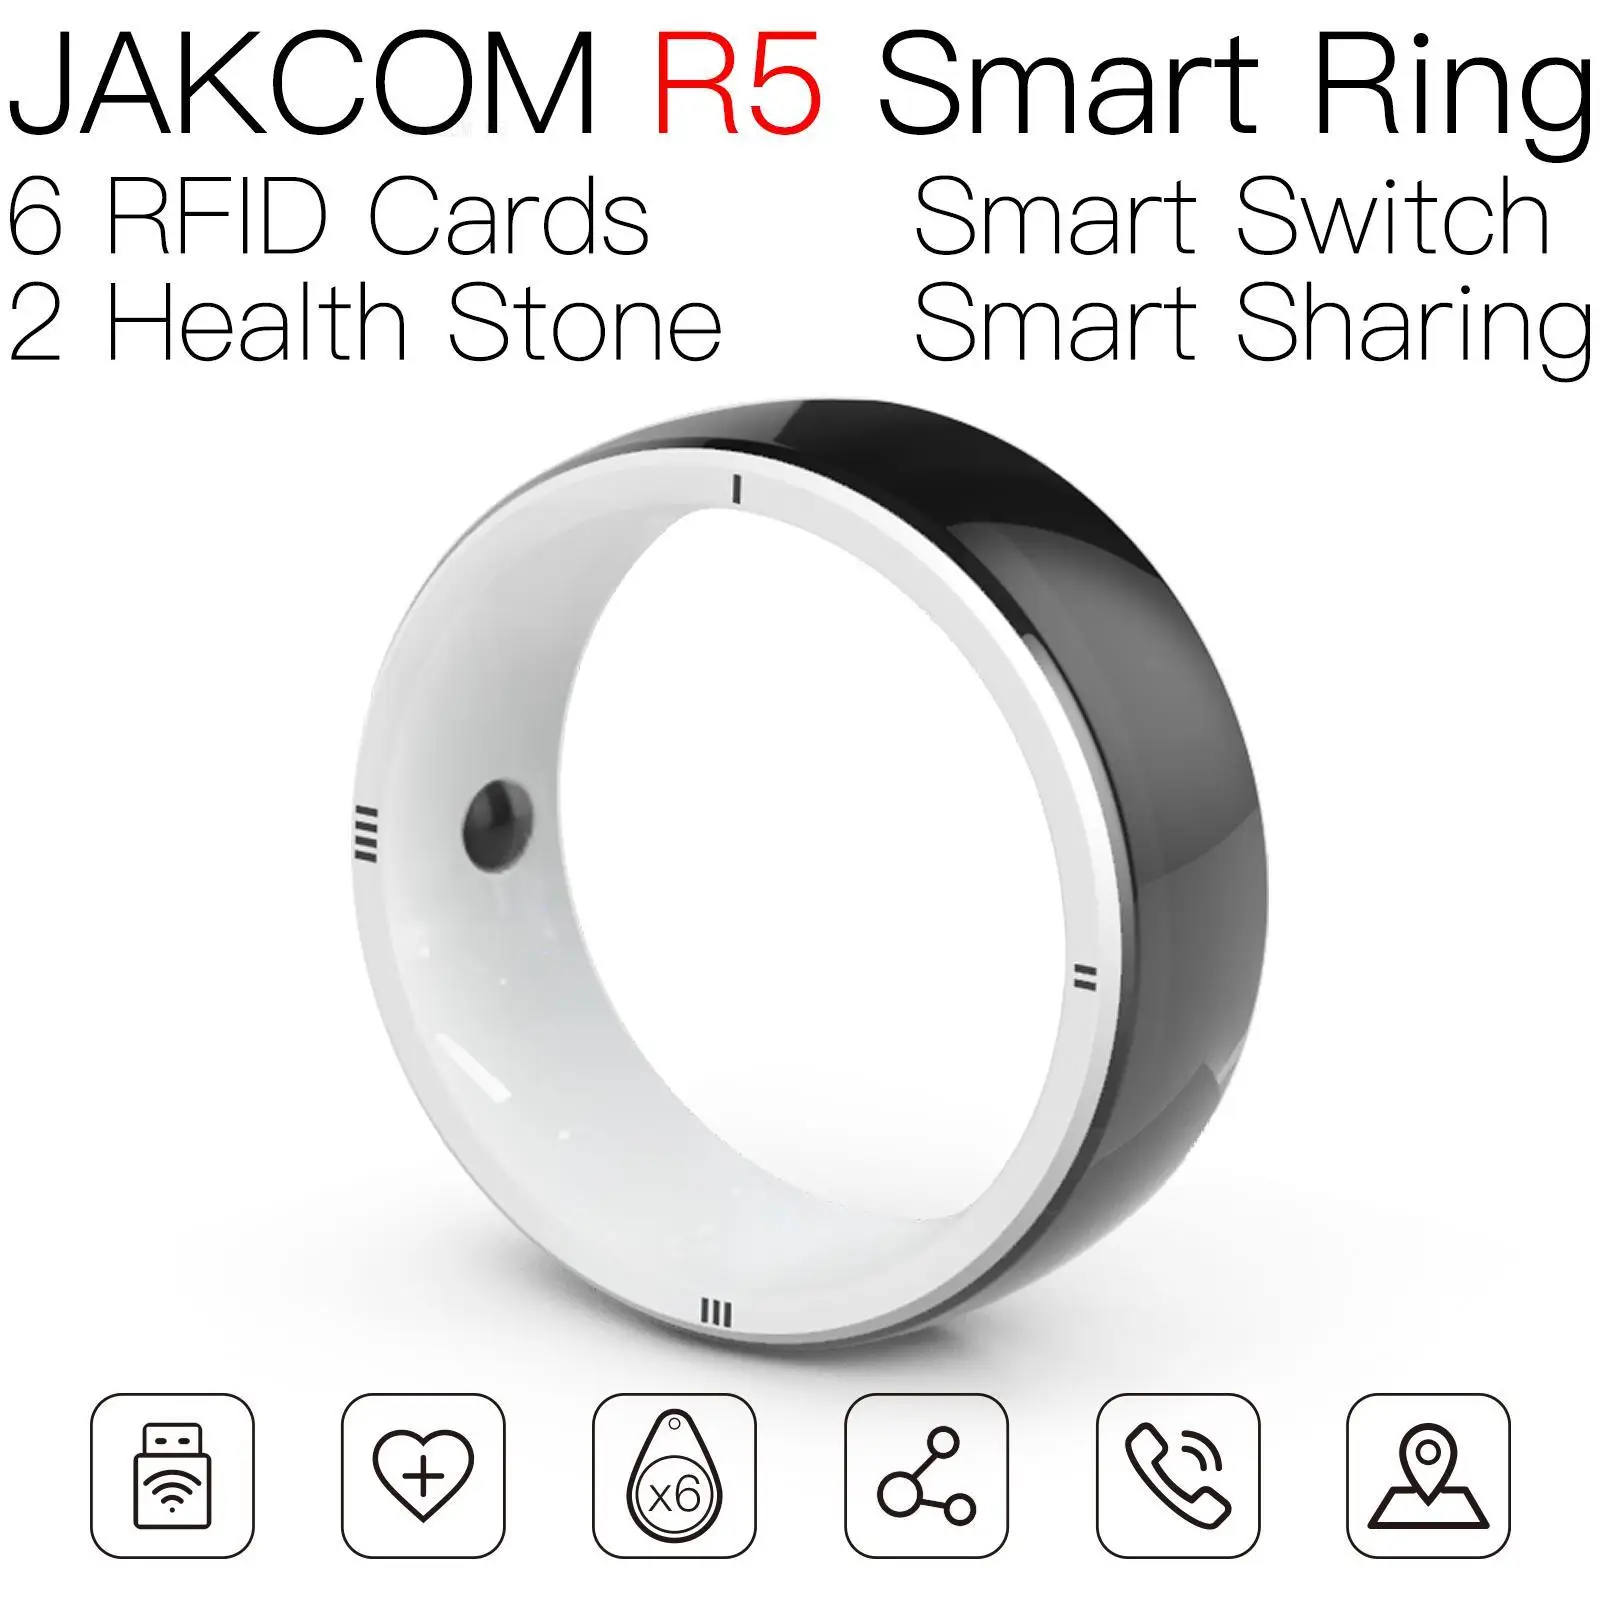 

Умное кольцо JAKCOM R5, лучше, чем умная бирка, цена офиса, 2019 plus sh p 125, Считыватель rfid, чип для покера, ключ 15693